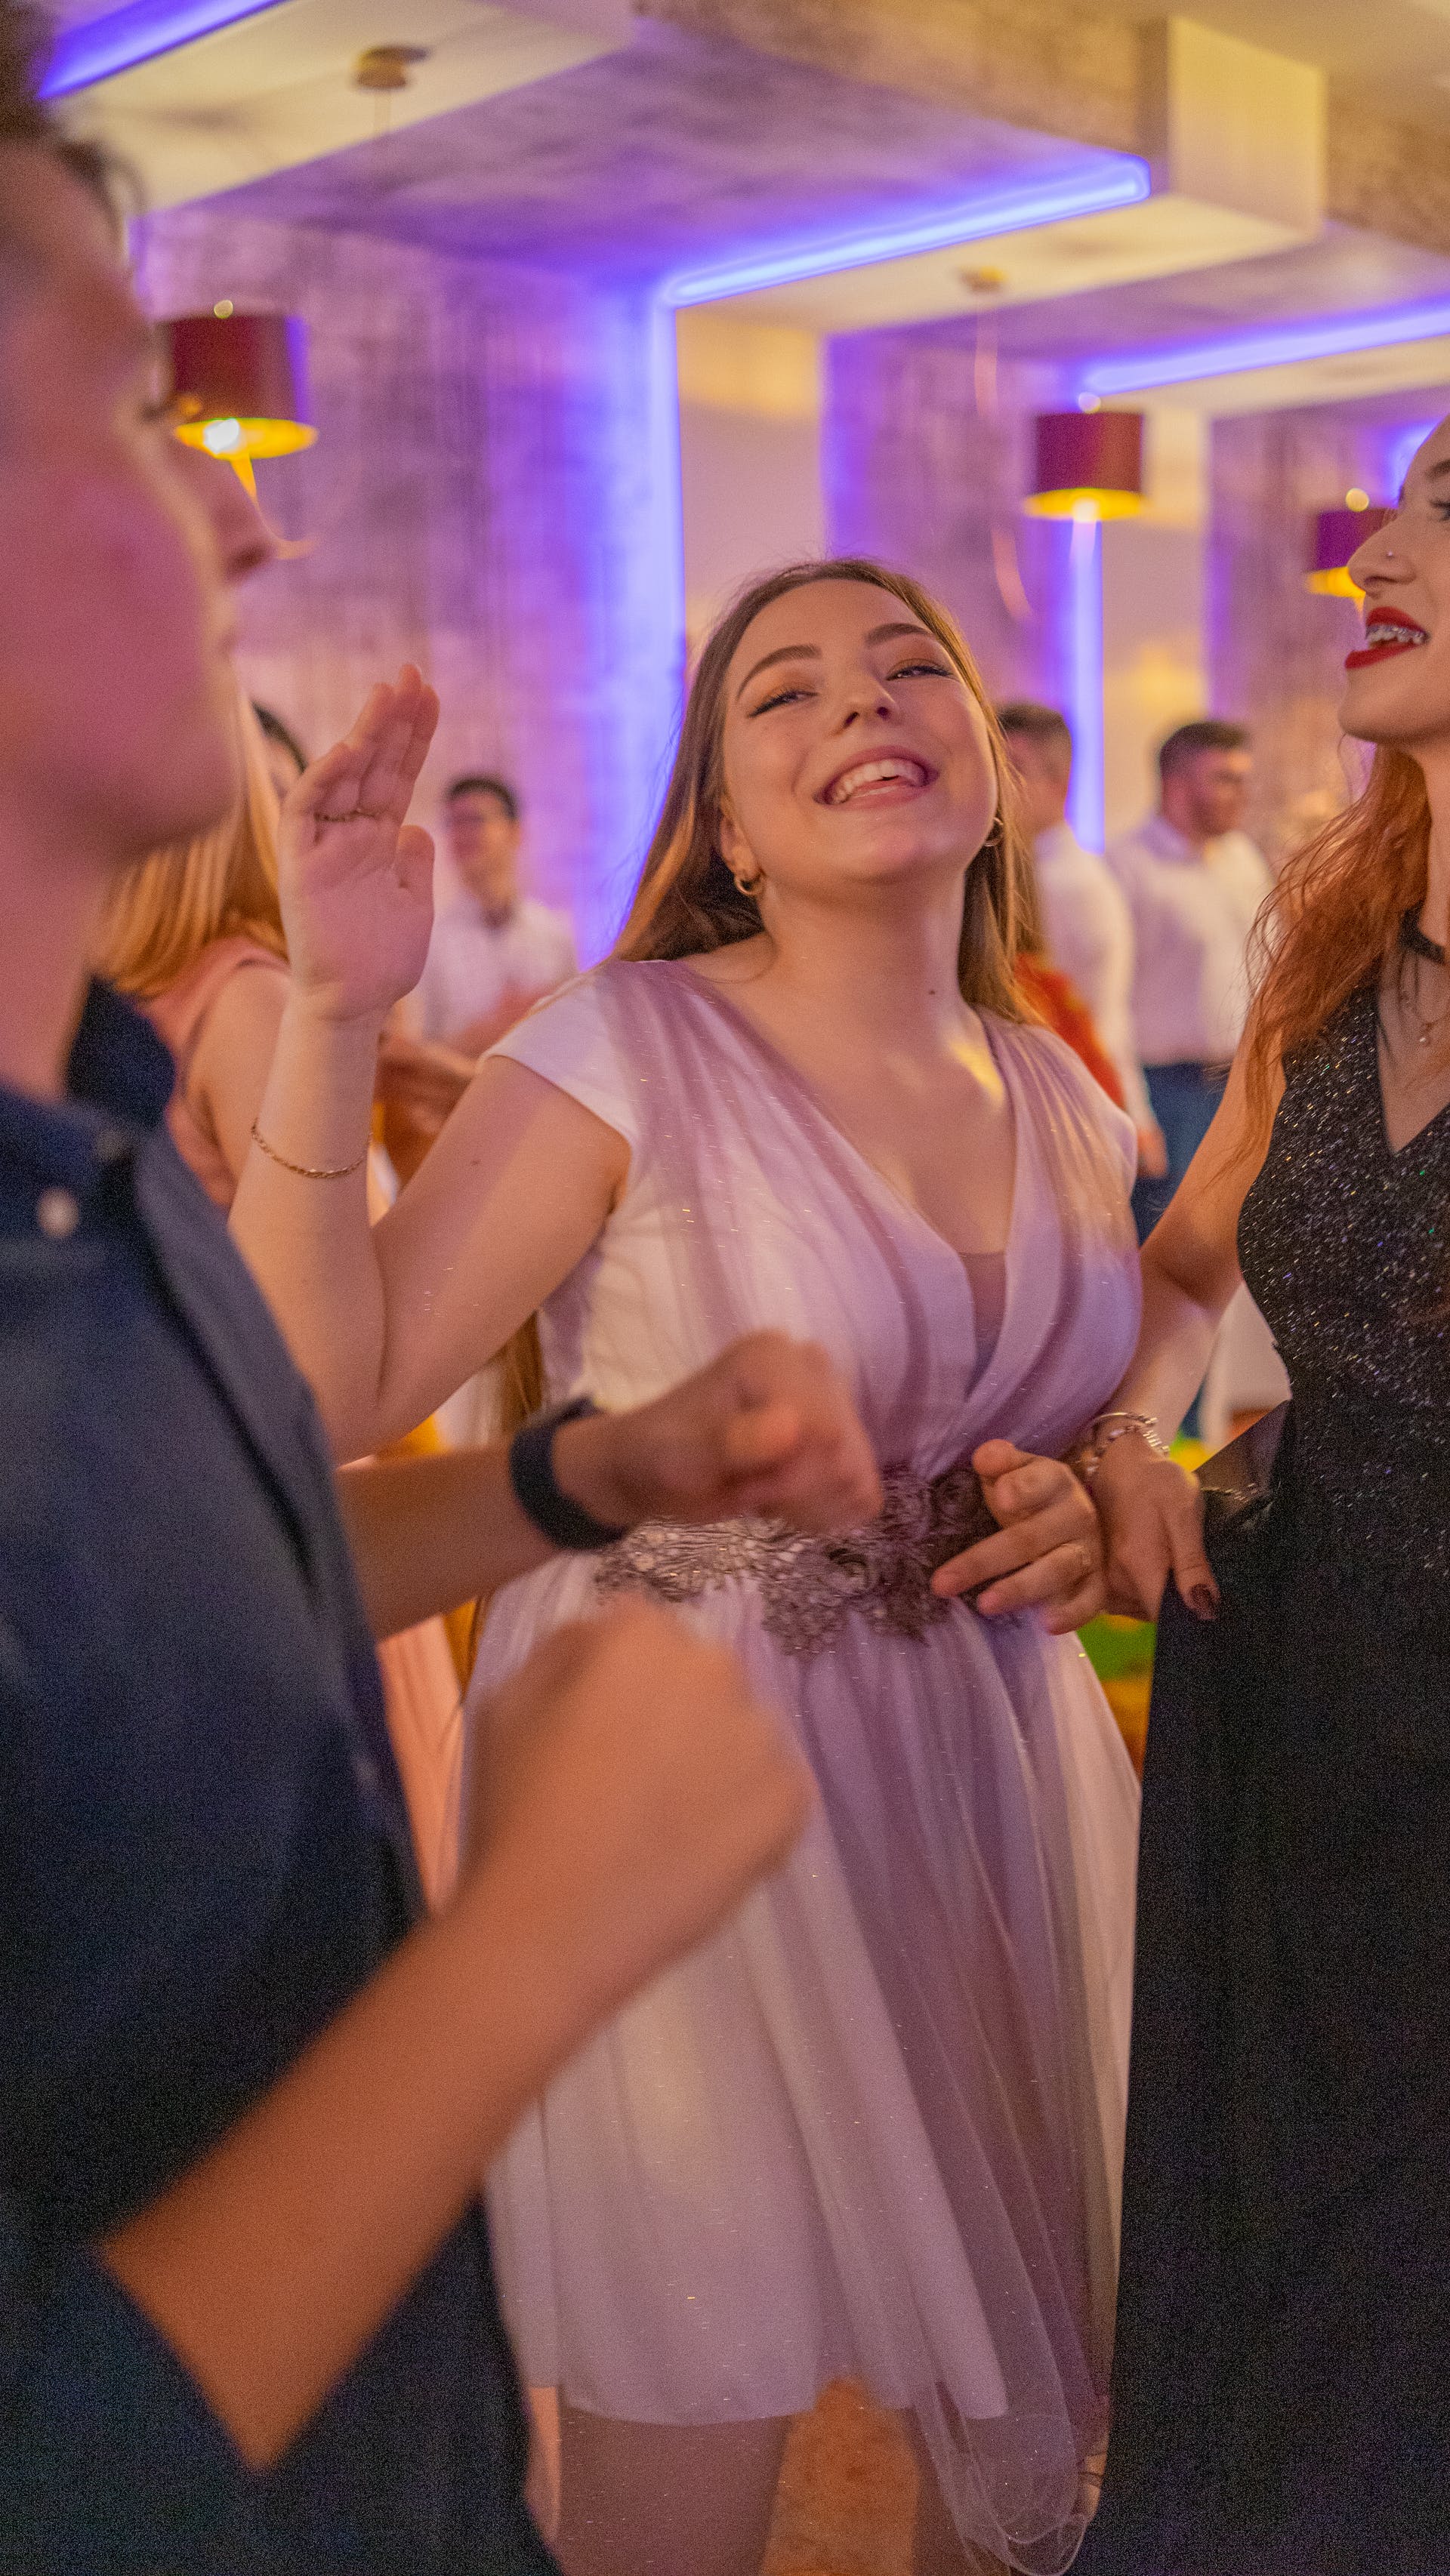 Una mujer bailando en un banquete de boda | Fuente: Pexels